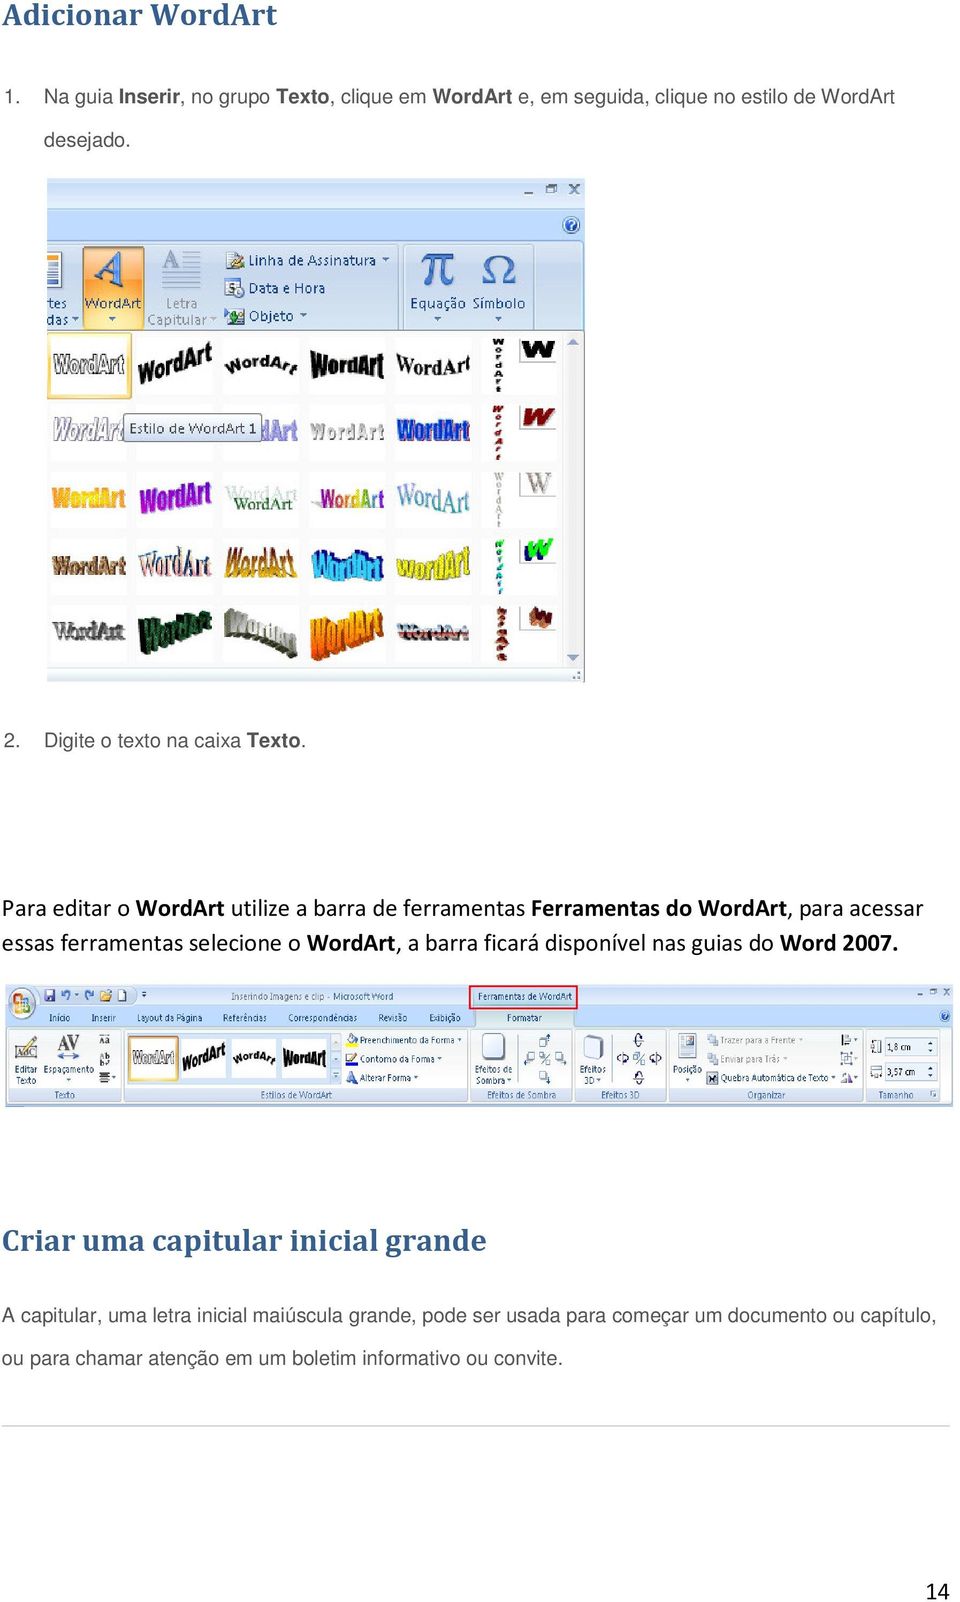 Para editar o WordArt utilize a barra de ferramentas Ferramentas do WordArt, para acessar essas ferramentas selecione o WordArt, a